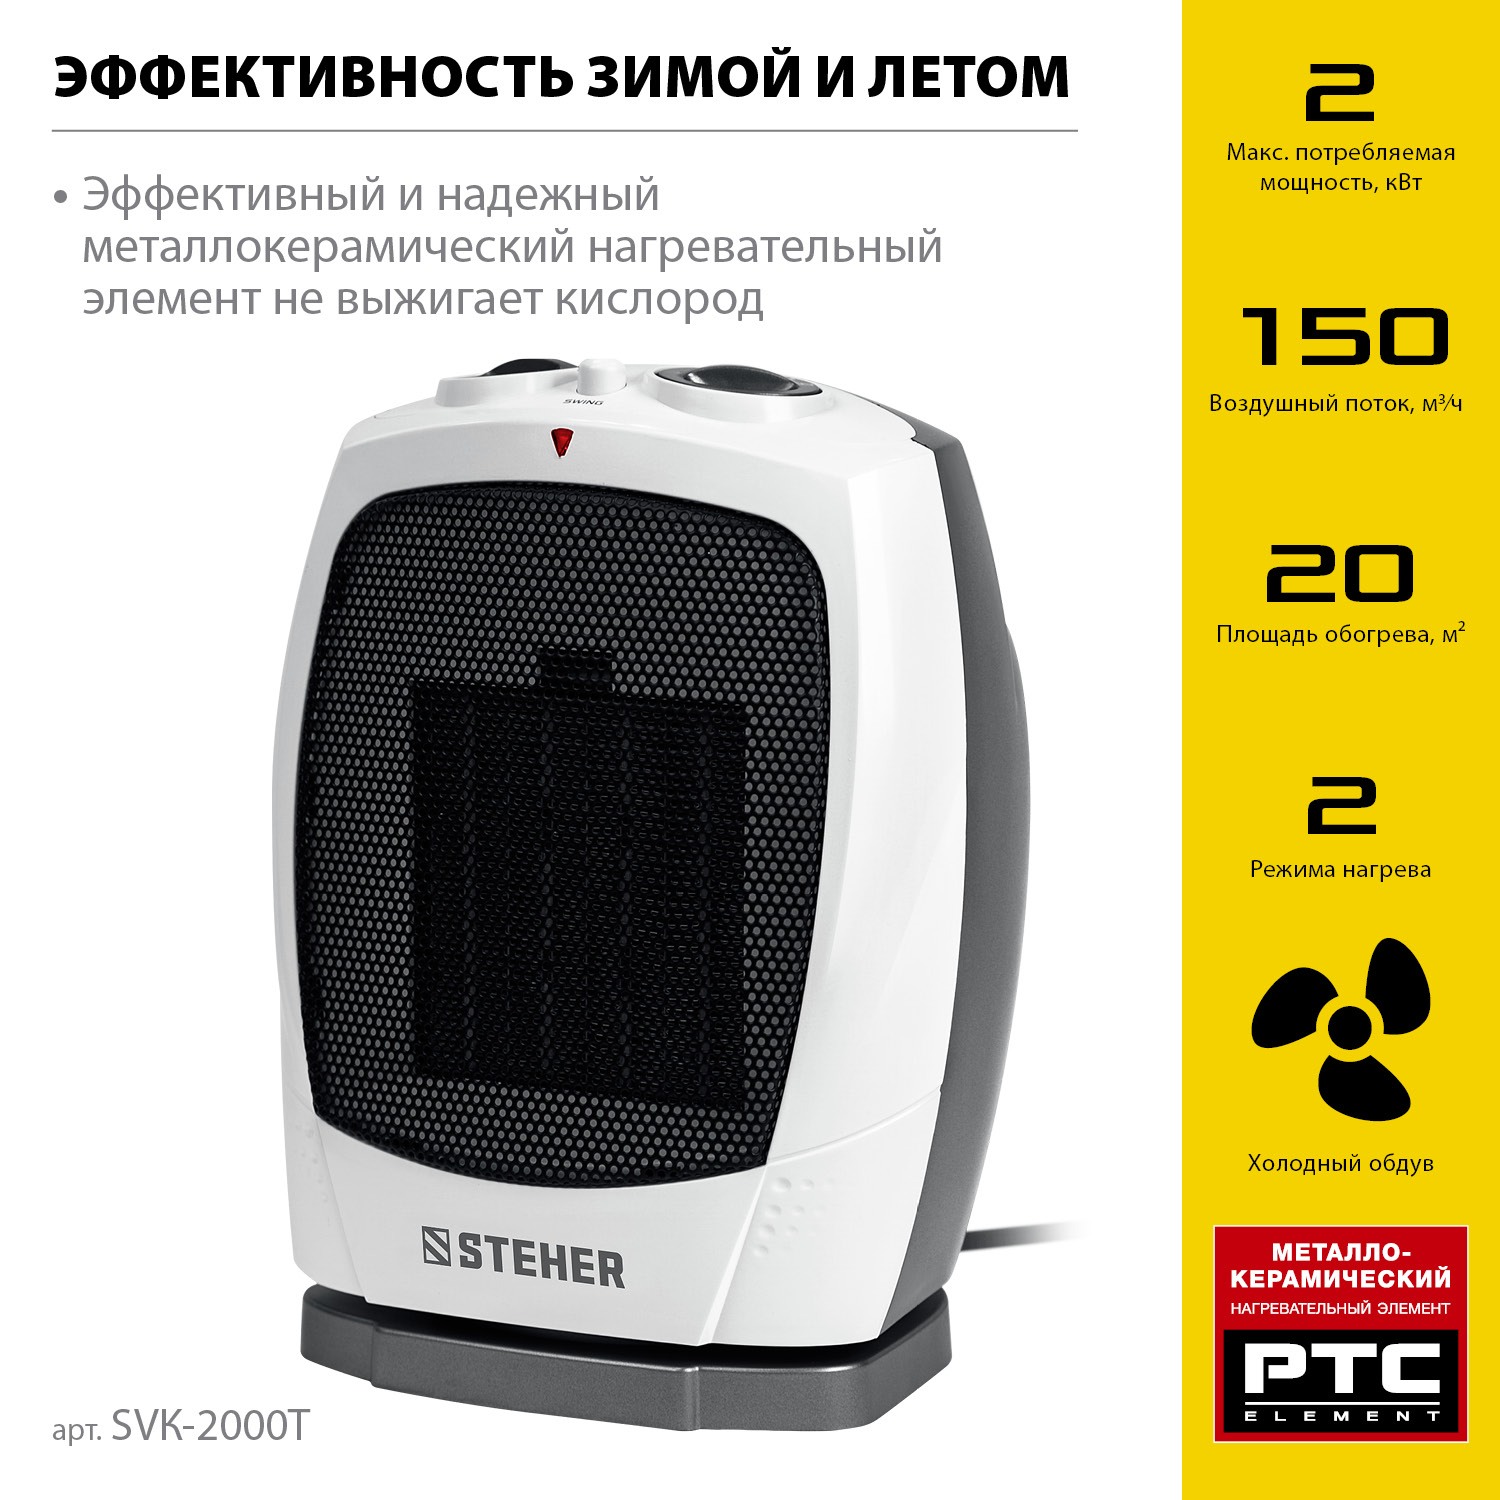 STEHER 2 кВт, тепловентилятор, металло-керамический нагревательный элемент, автоповорот (SVK-2000T)